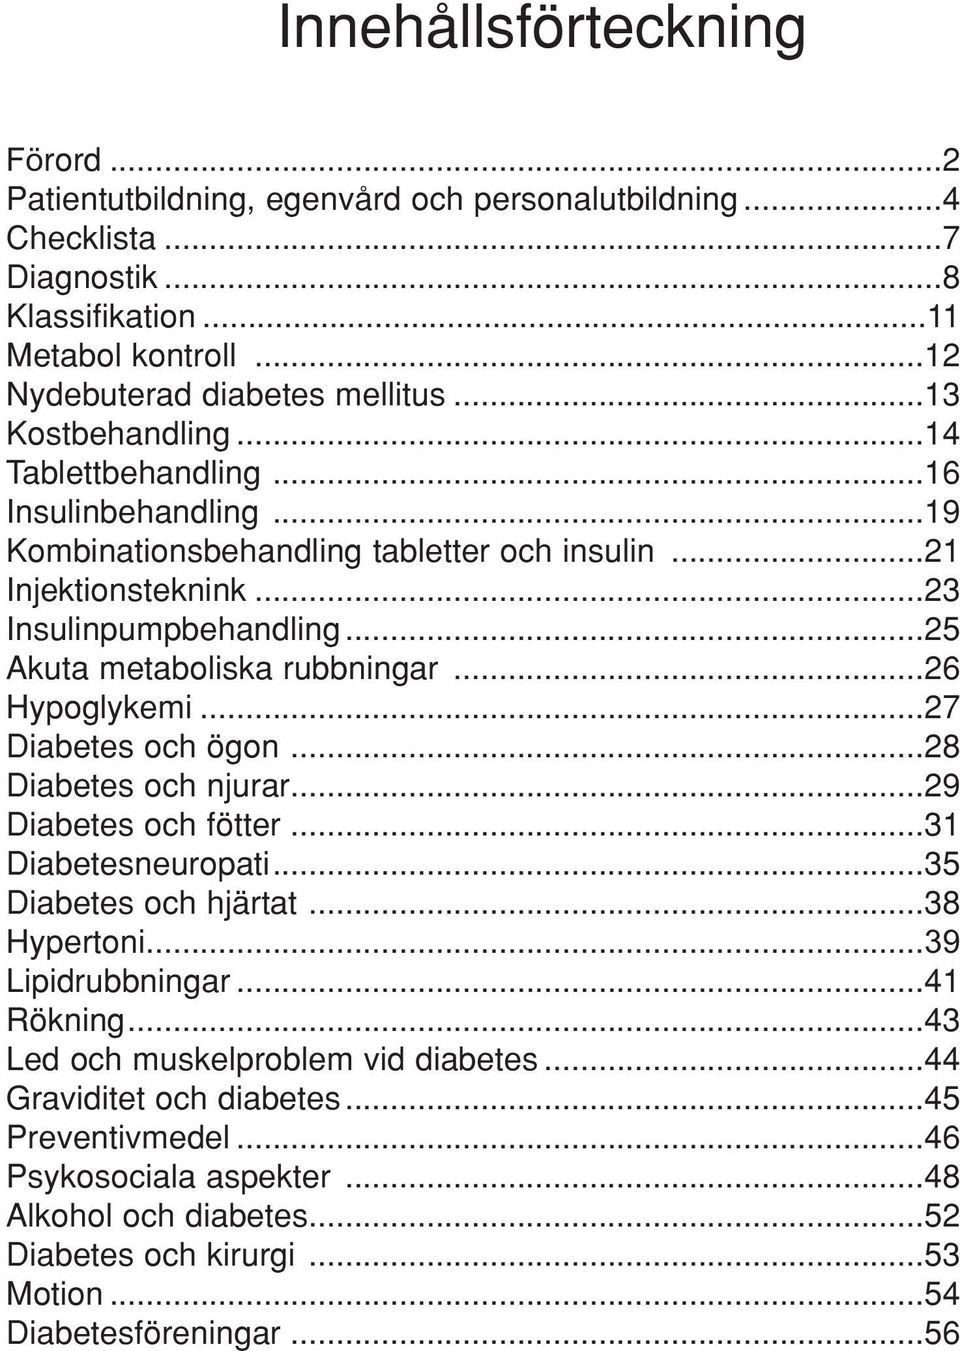 ..25 Akuta metaboliska rubbningar...26 Hypoglykemi...27 Diabetes och ögon...28 Diabetes och njurar...29 Diabetes och fötter...31 Diabetesneuropati...35 Diabetes och hjärtat...38 Hypertoni.